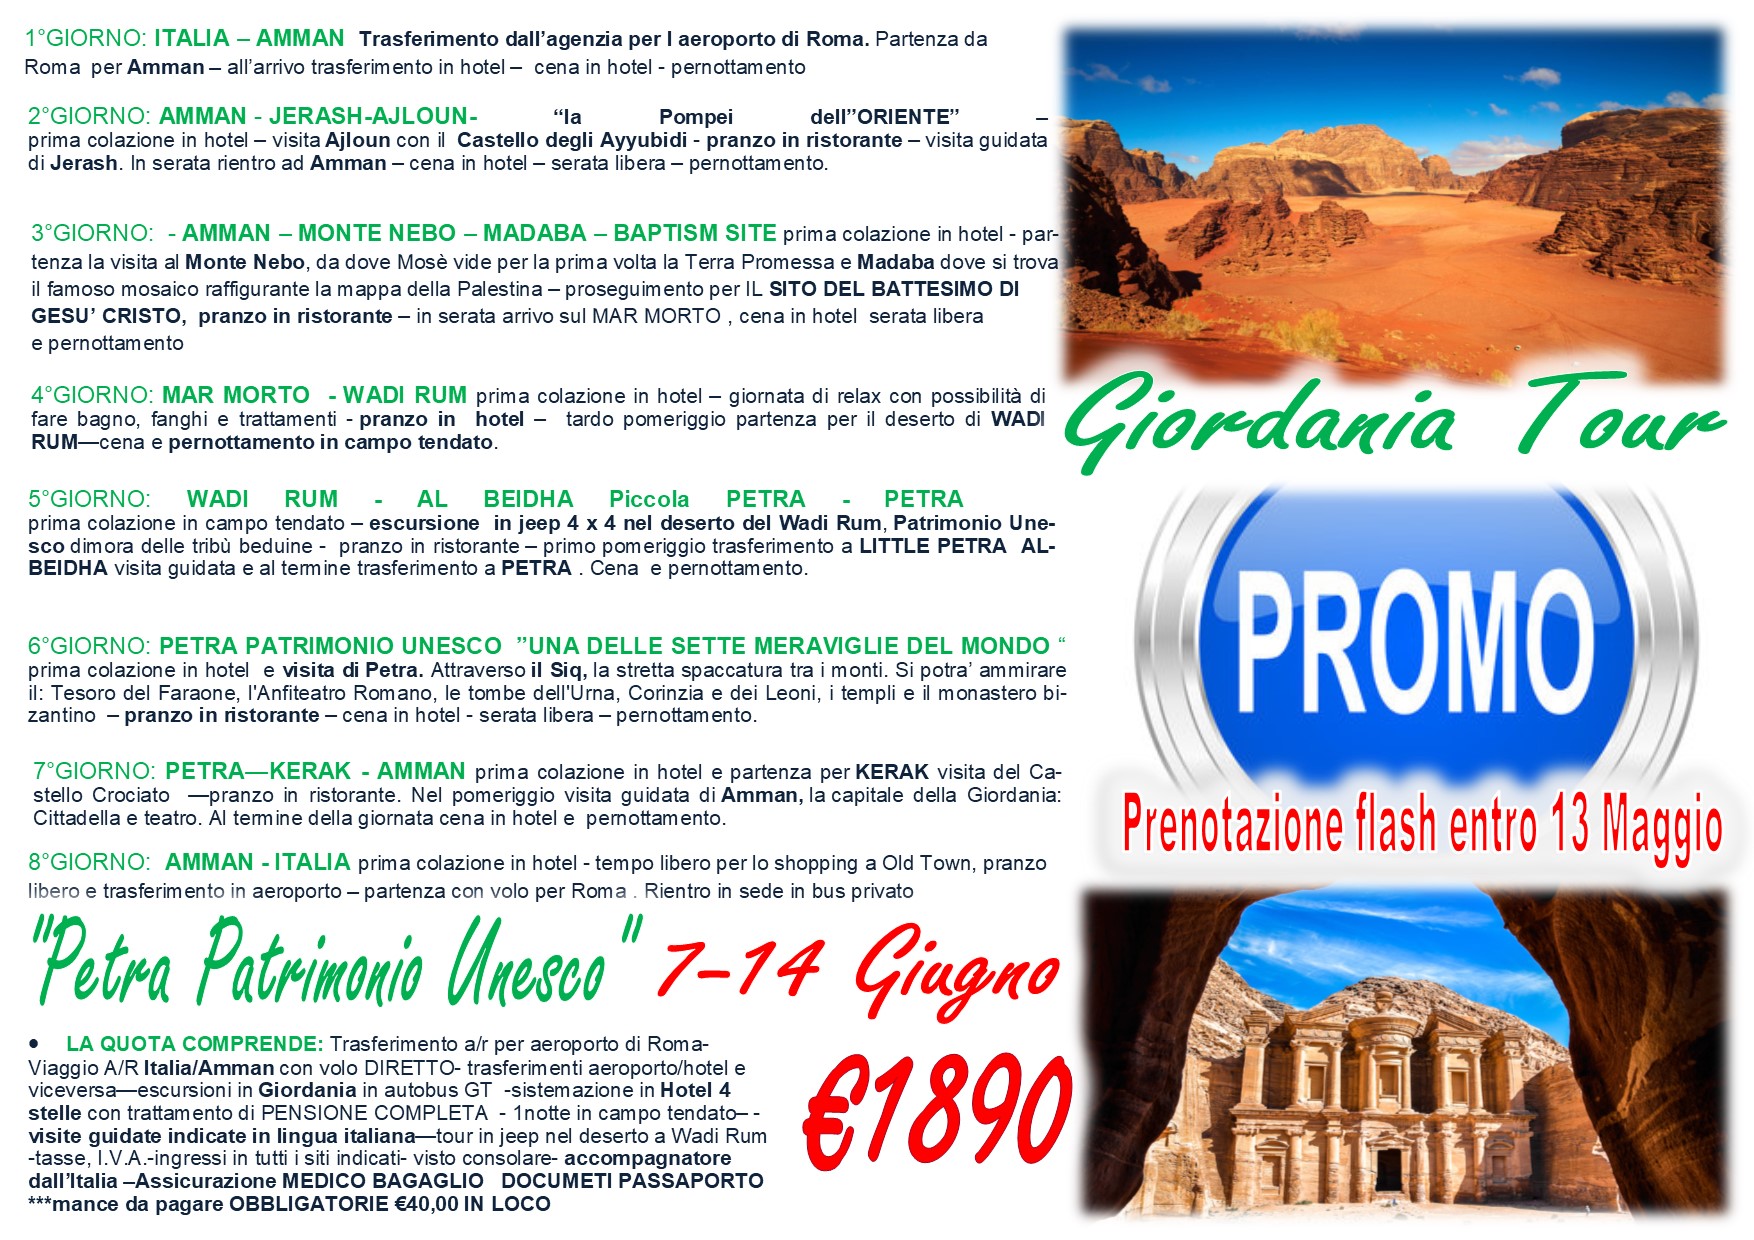 Viaggi di Gruppo: Tour Giordania “Promo Speciale ” 7-14 Giugno  € 1890,00